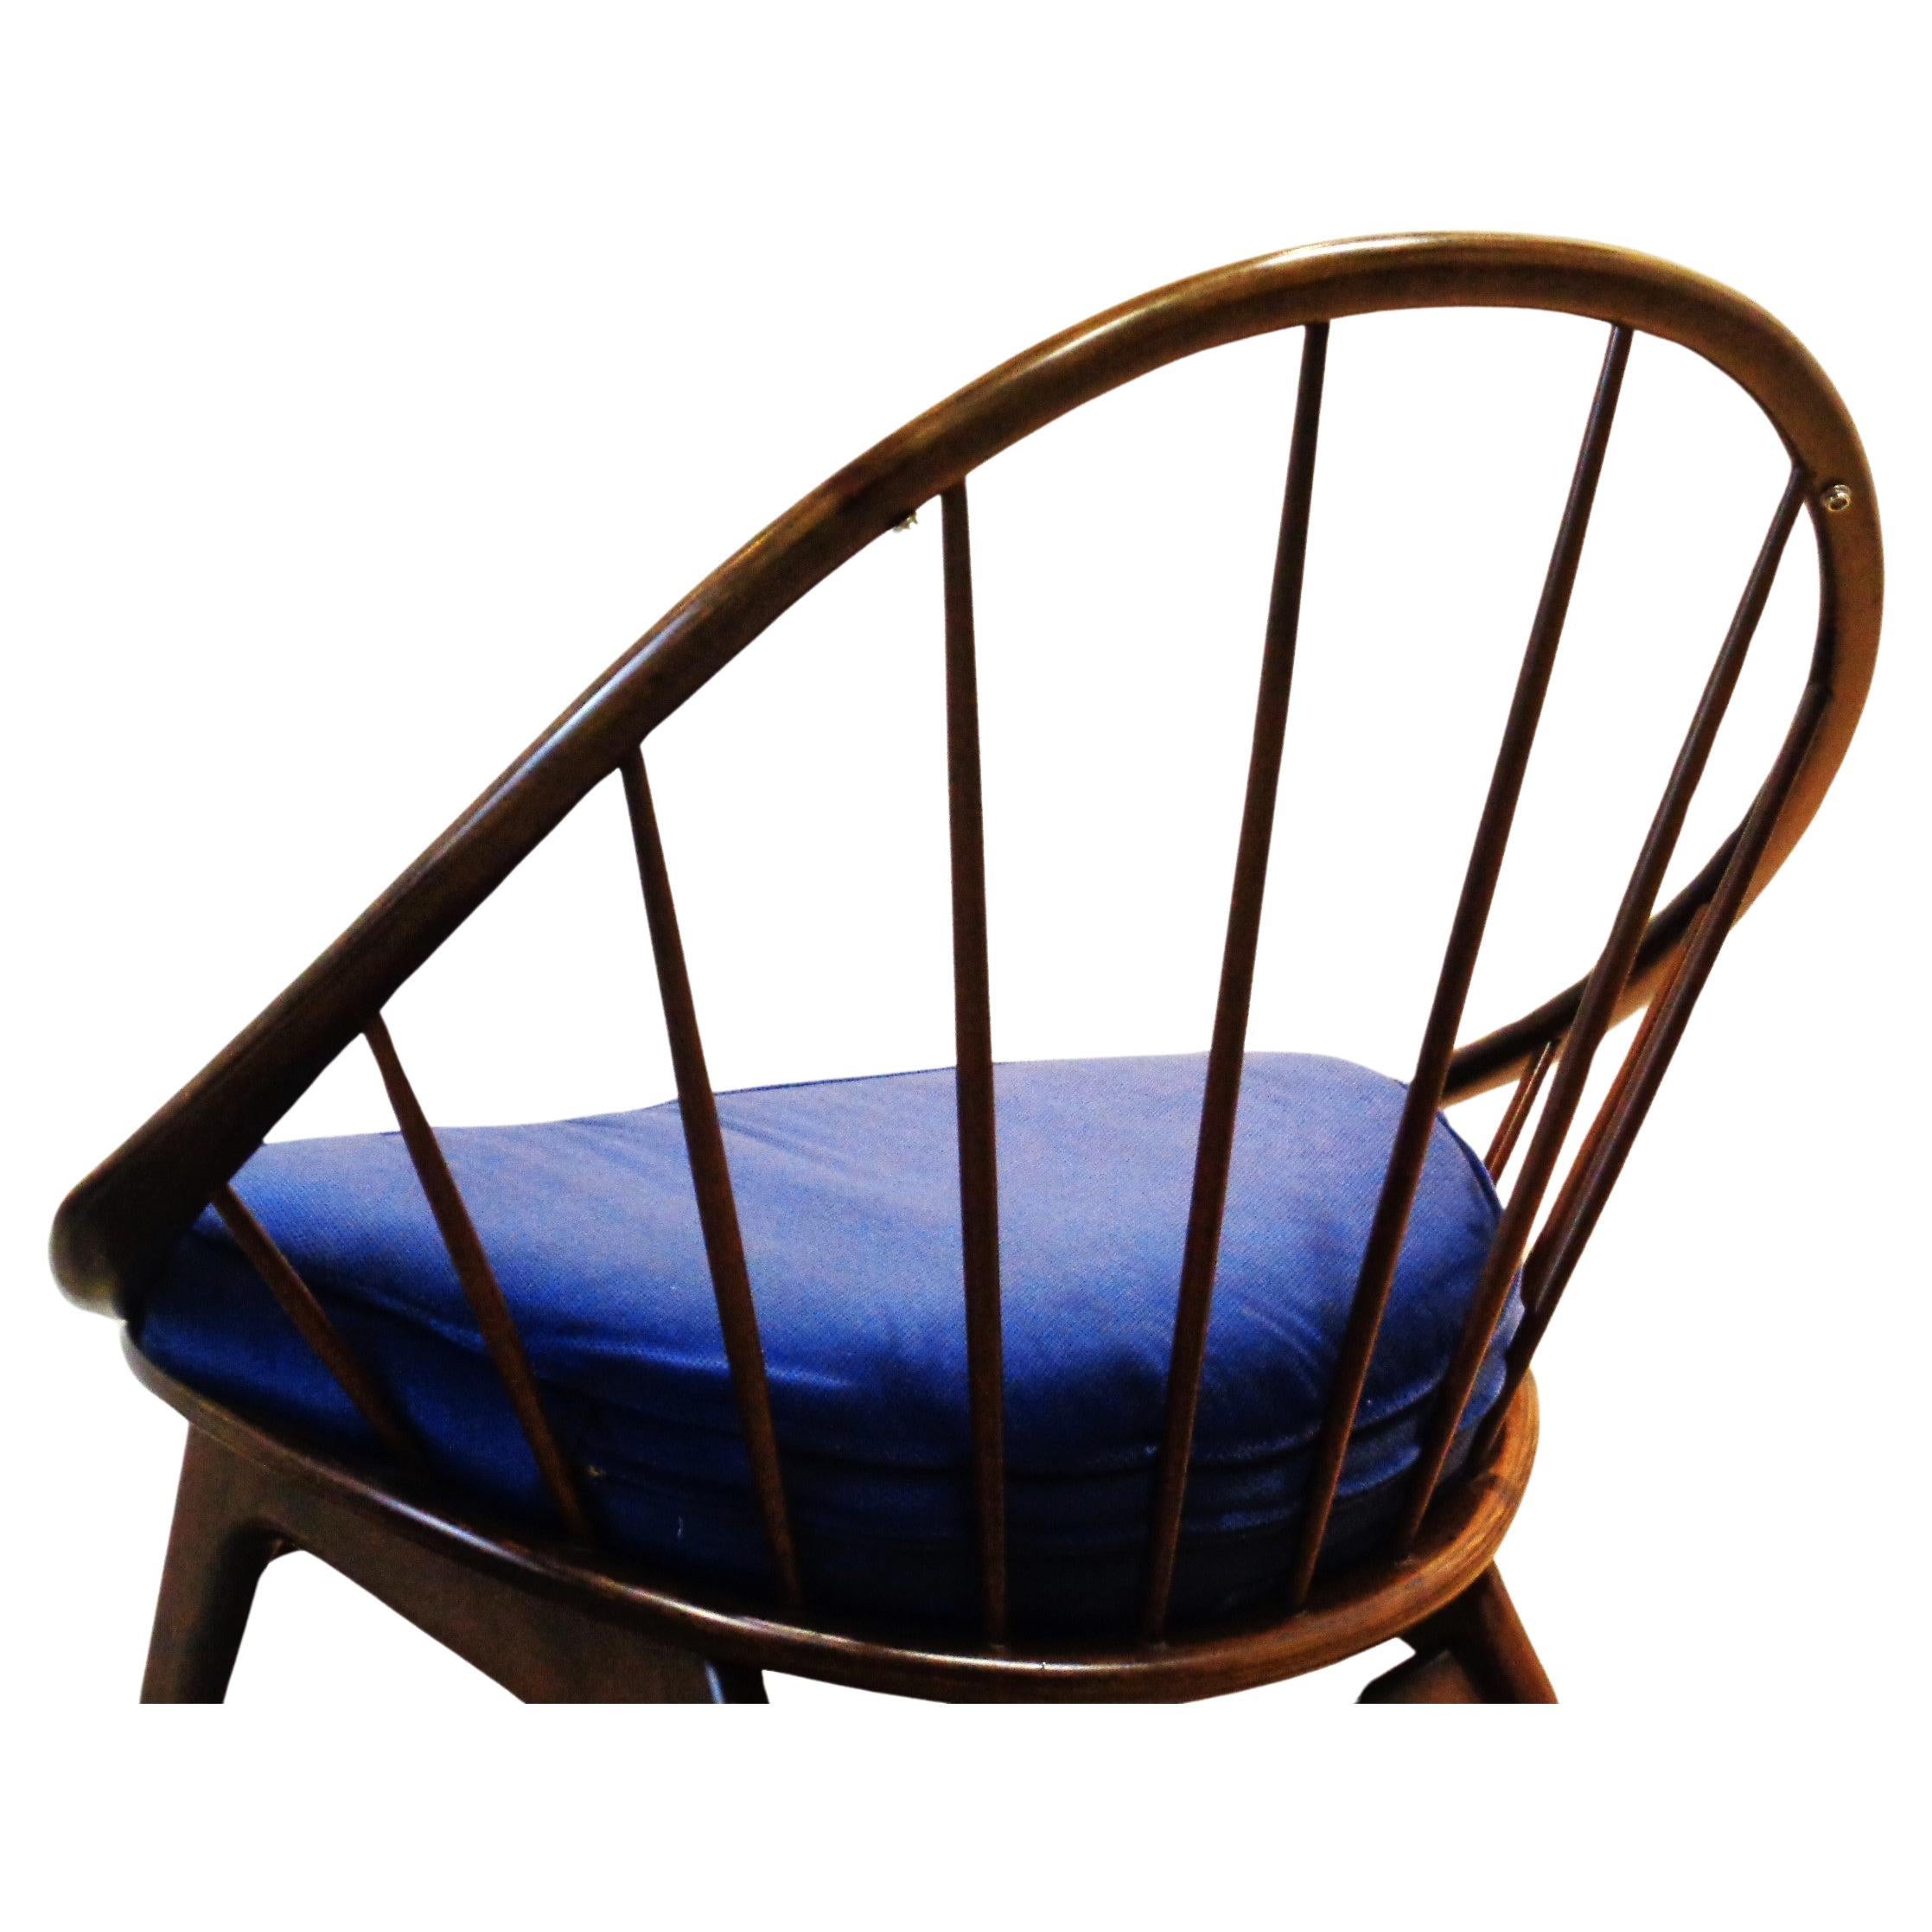 Ib Kofod-Larsen Peacock Chair Selig Denmark, 1950-1960 For Sale 4